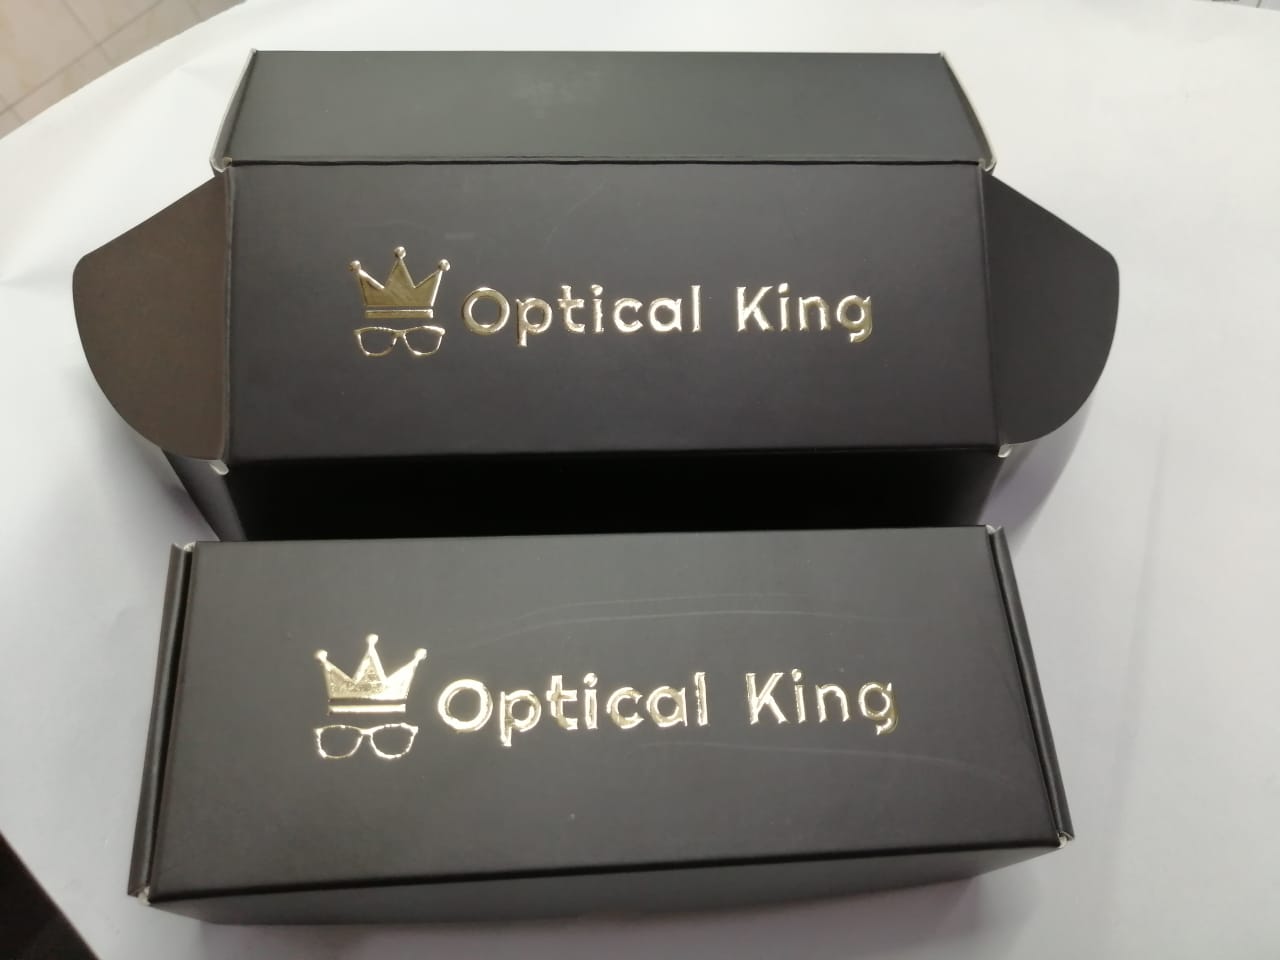 8_optical-king-mailer-box_0_1668886047.jpg